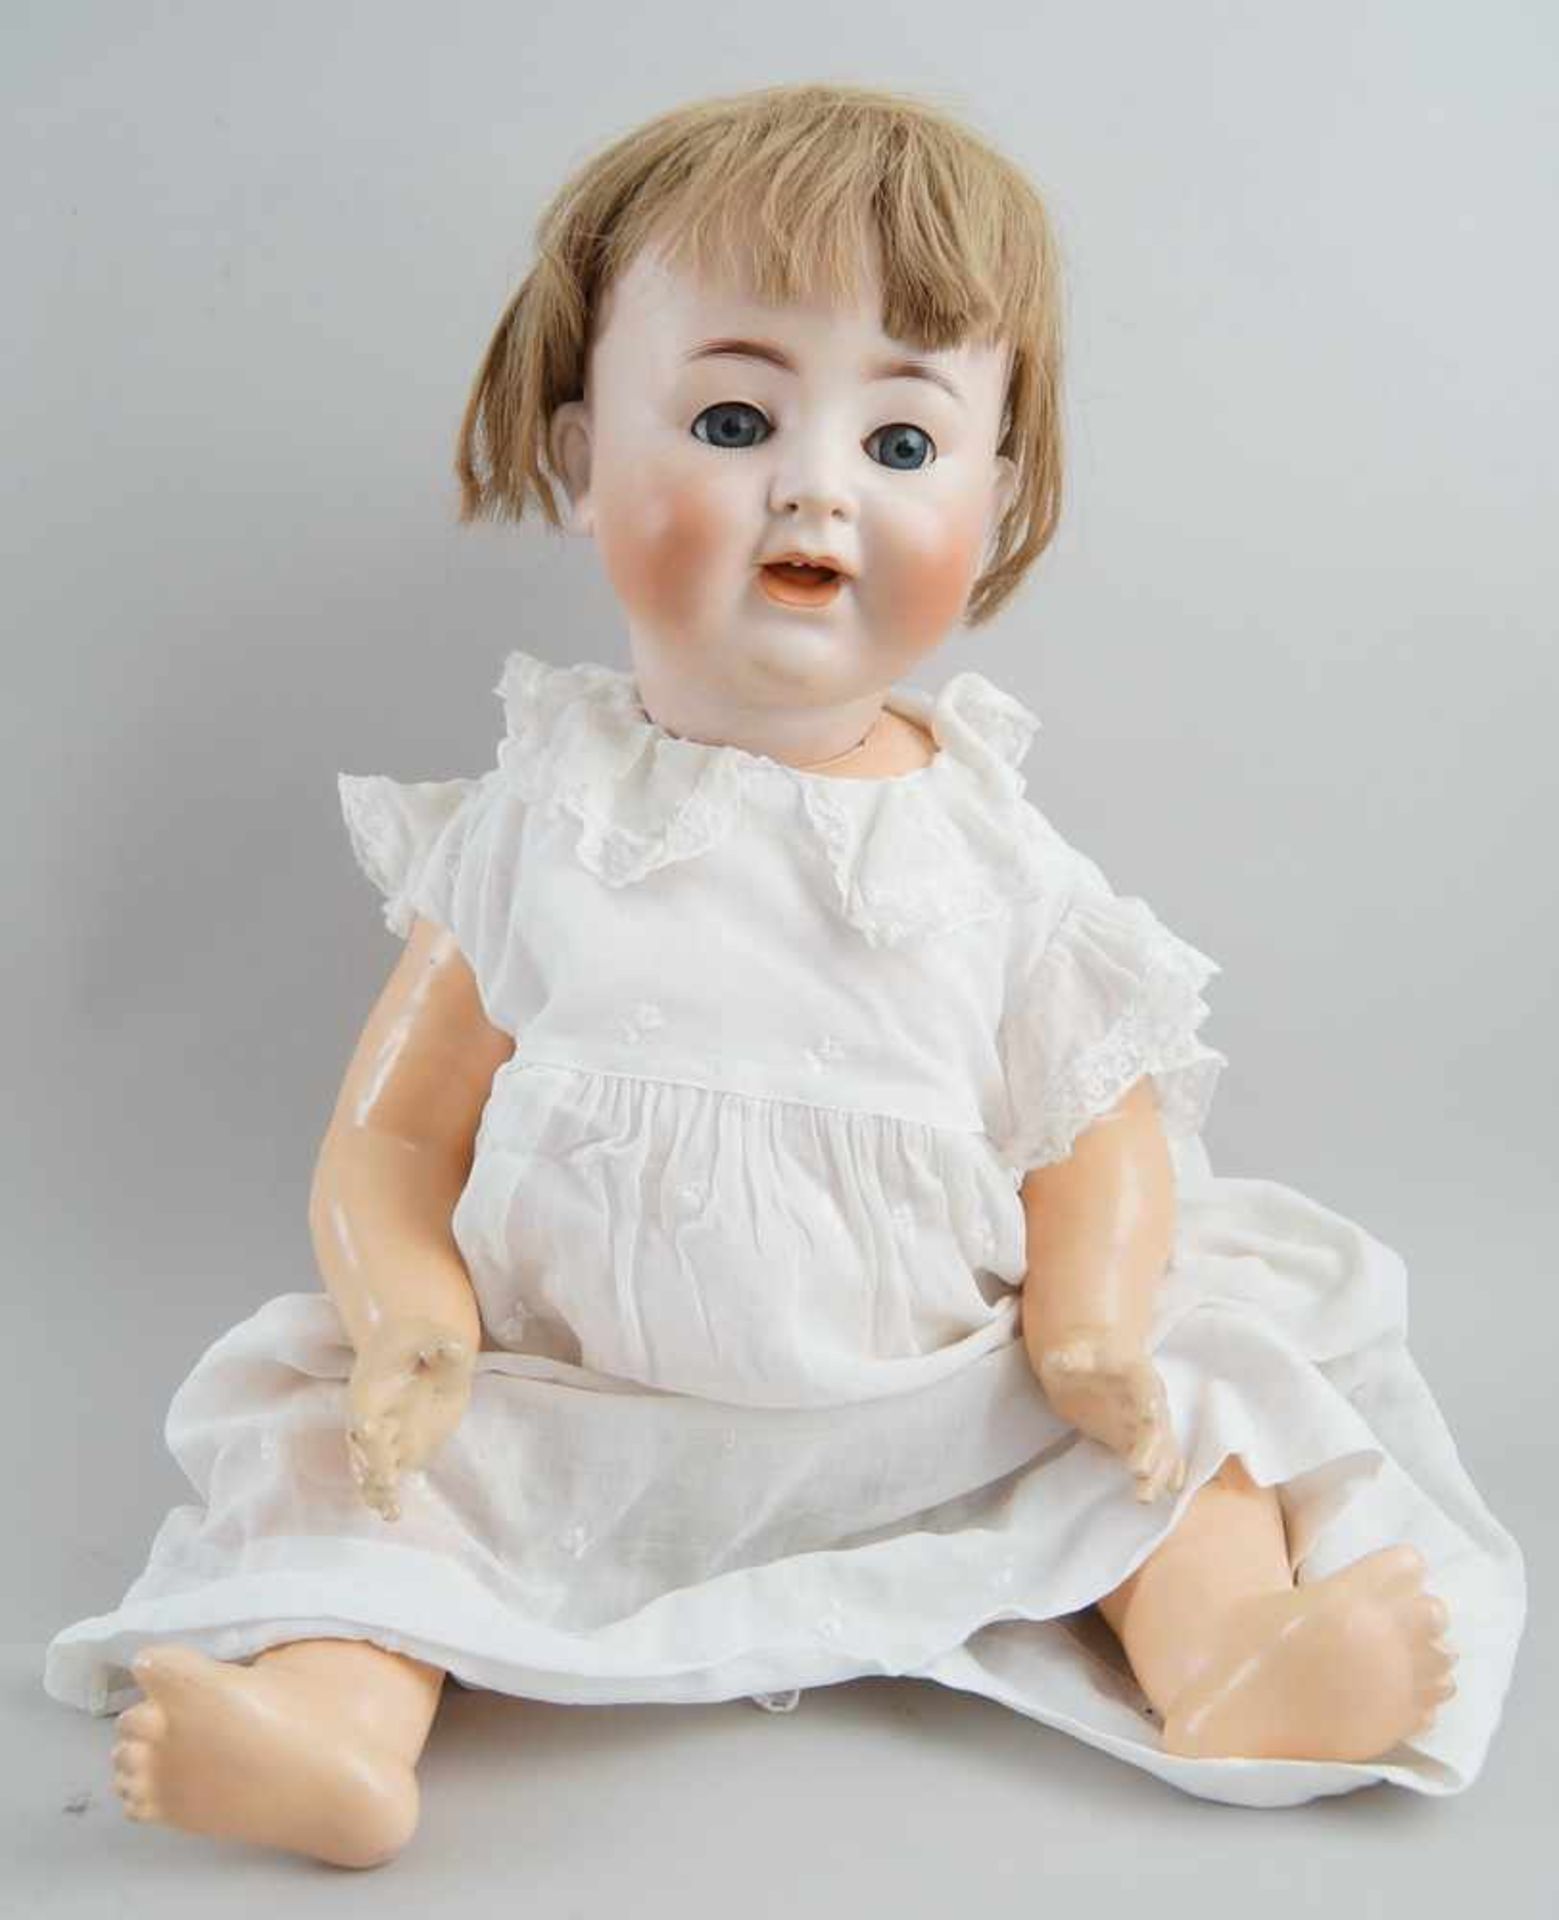 Puppe Alt Beck Gottschalck, 1361, ~ 1920, bespielt, 59cm- - -24.00 % buyer's premium on the hammer - Bild 2 aus 3